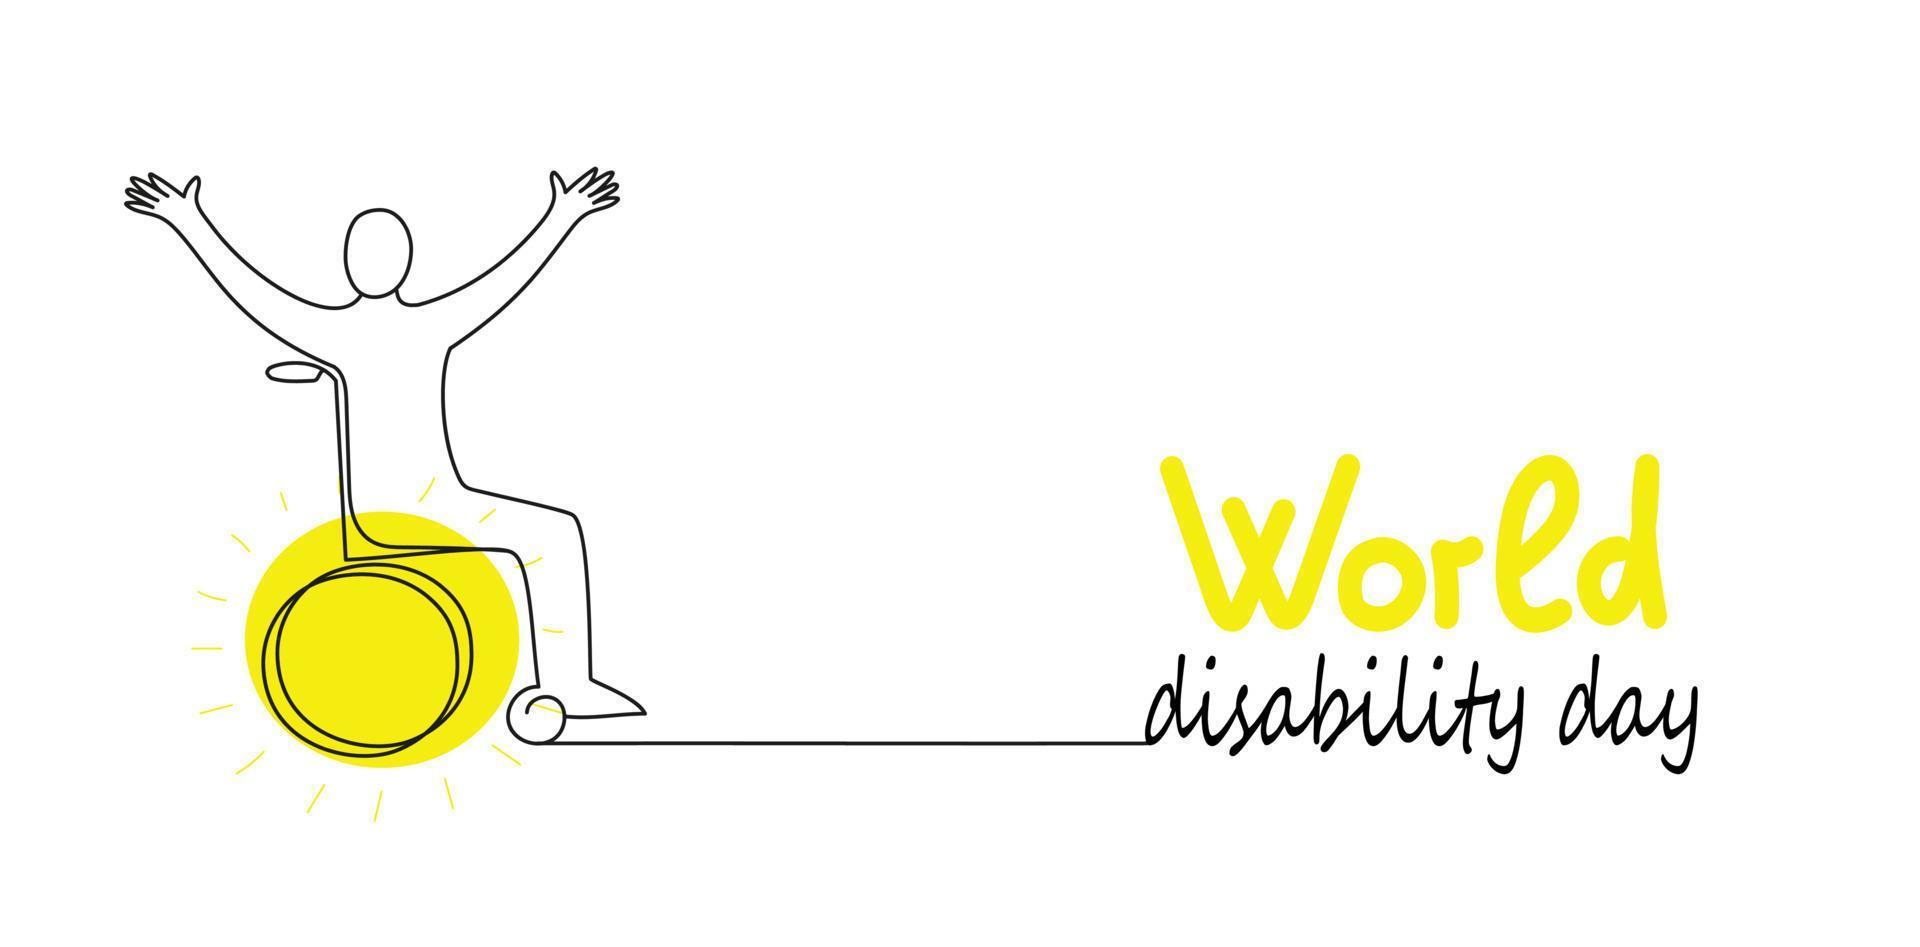 persona en silla de ruedas. pancarta de garabatos vectoriales del día mundial de la discapacidad. ilustración de dibujo de línea continua para las redes sociales. vector